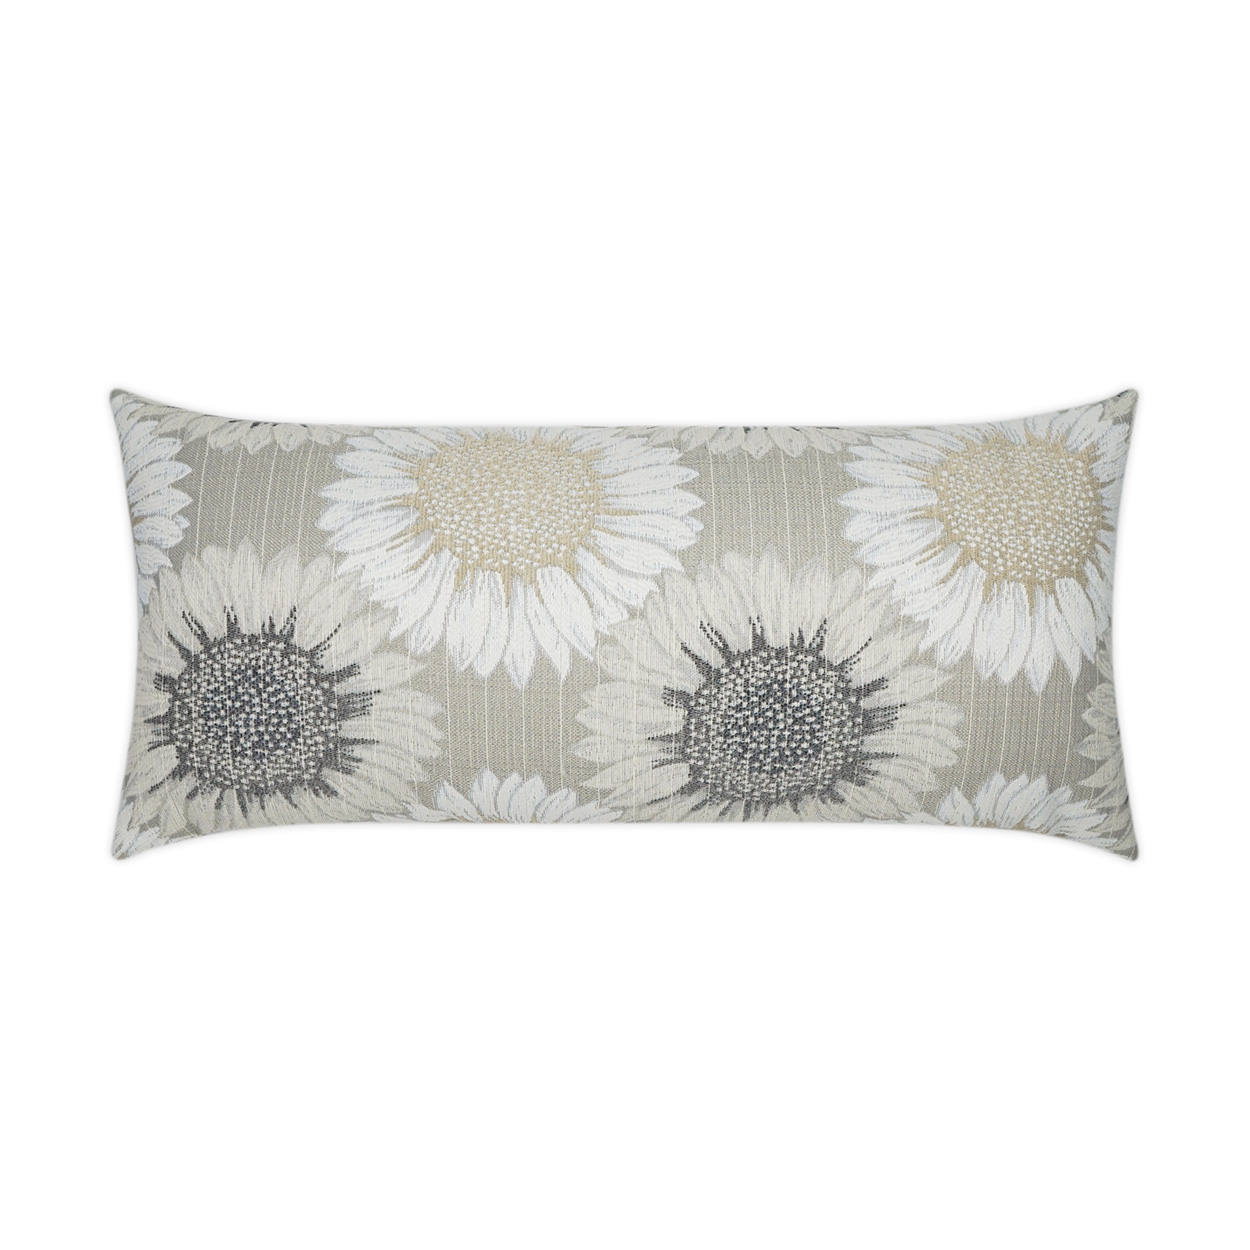 Daisy Chain Sand Lumbar Outdoor Pillow 24x12